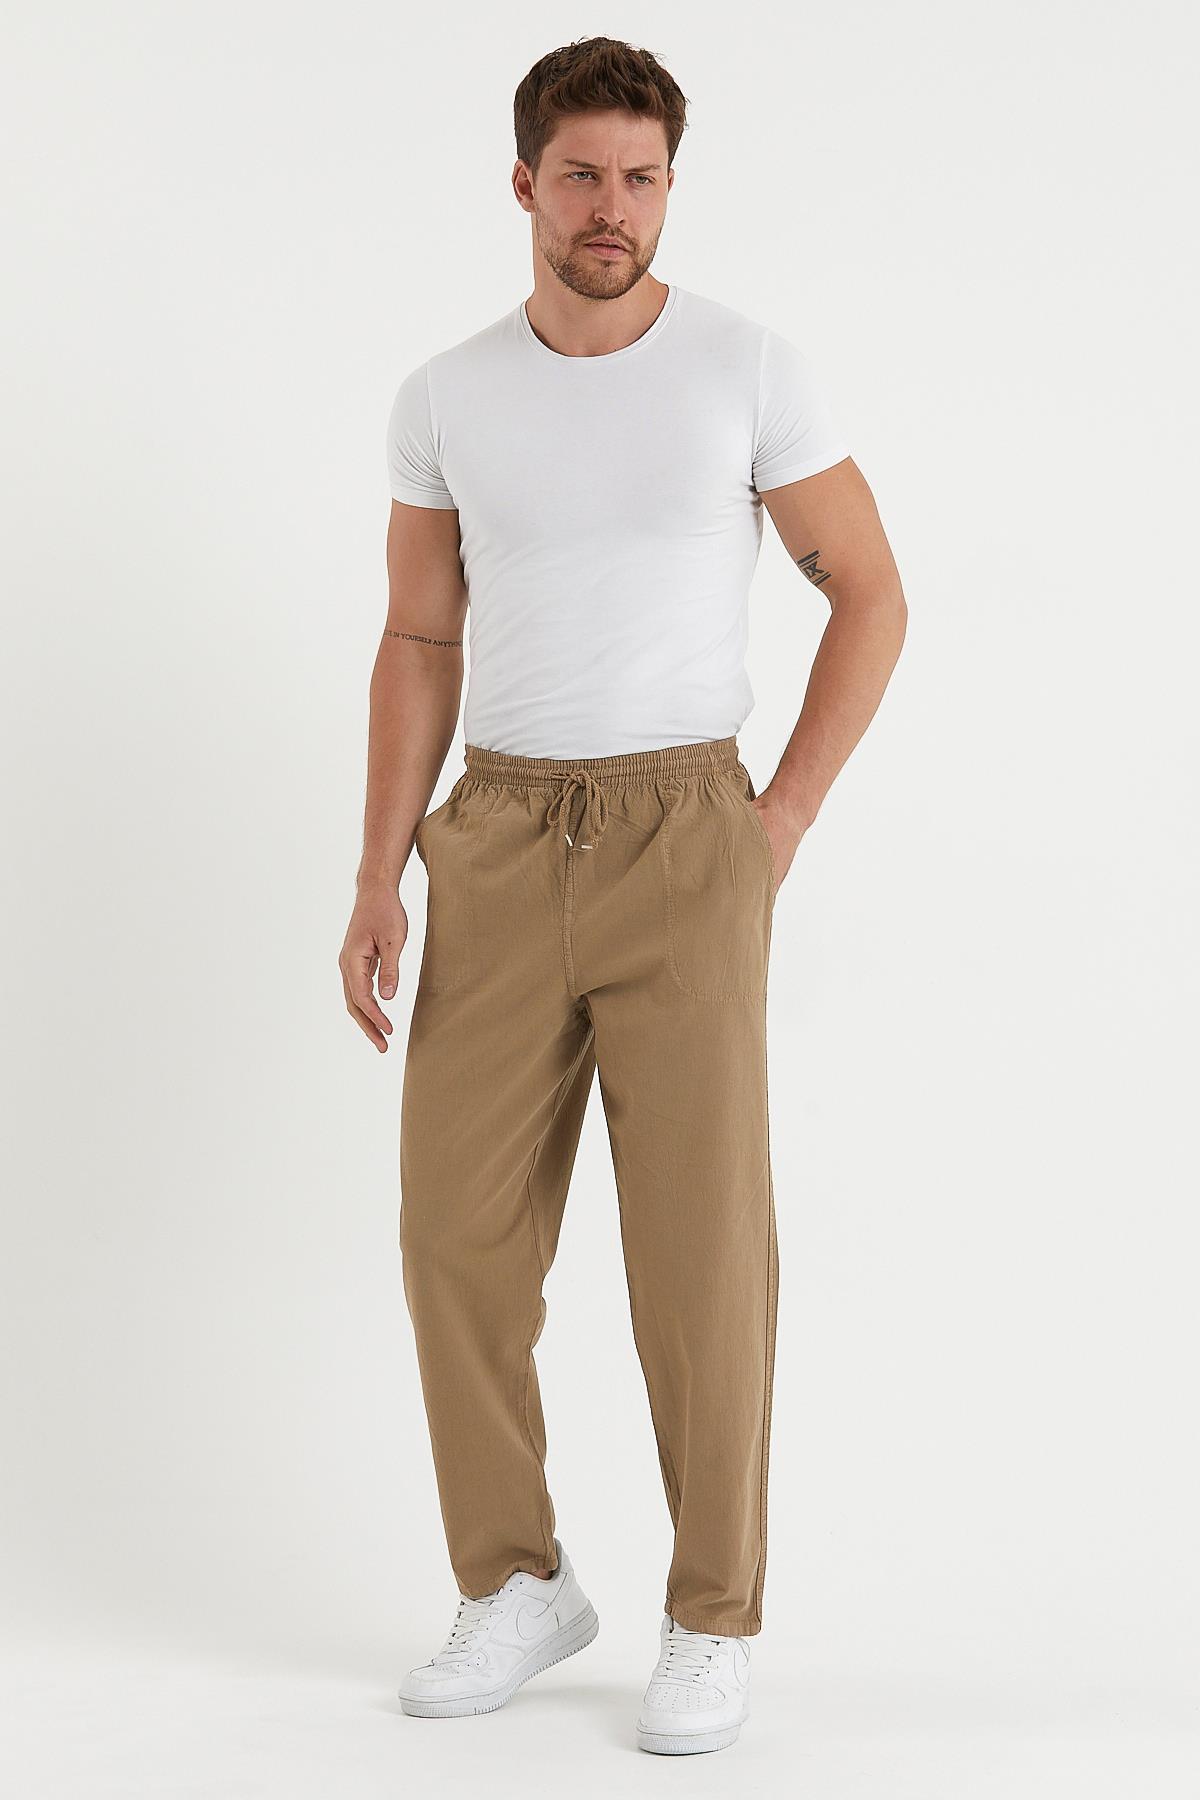 Erkek Keten & Yazlık Pantolon Modelleri